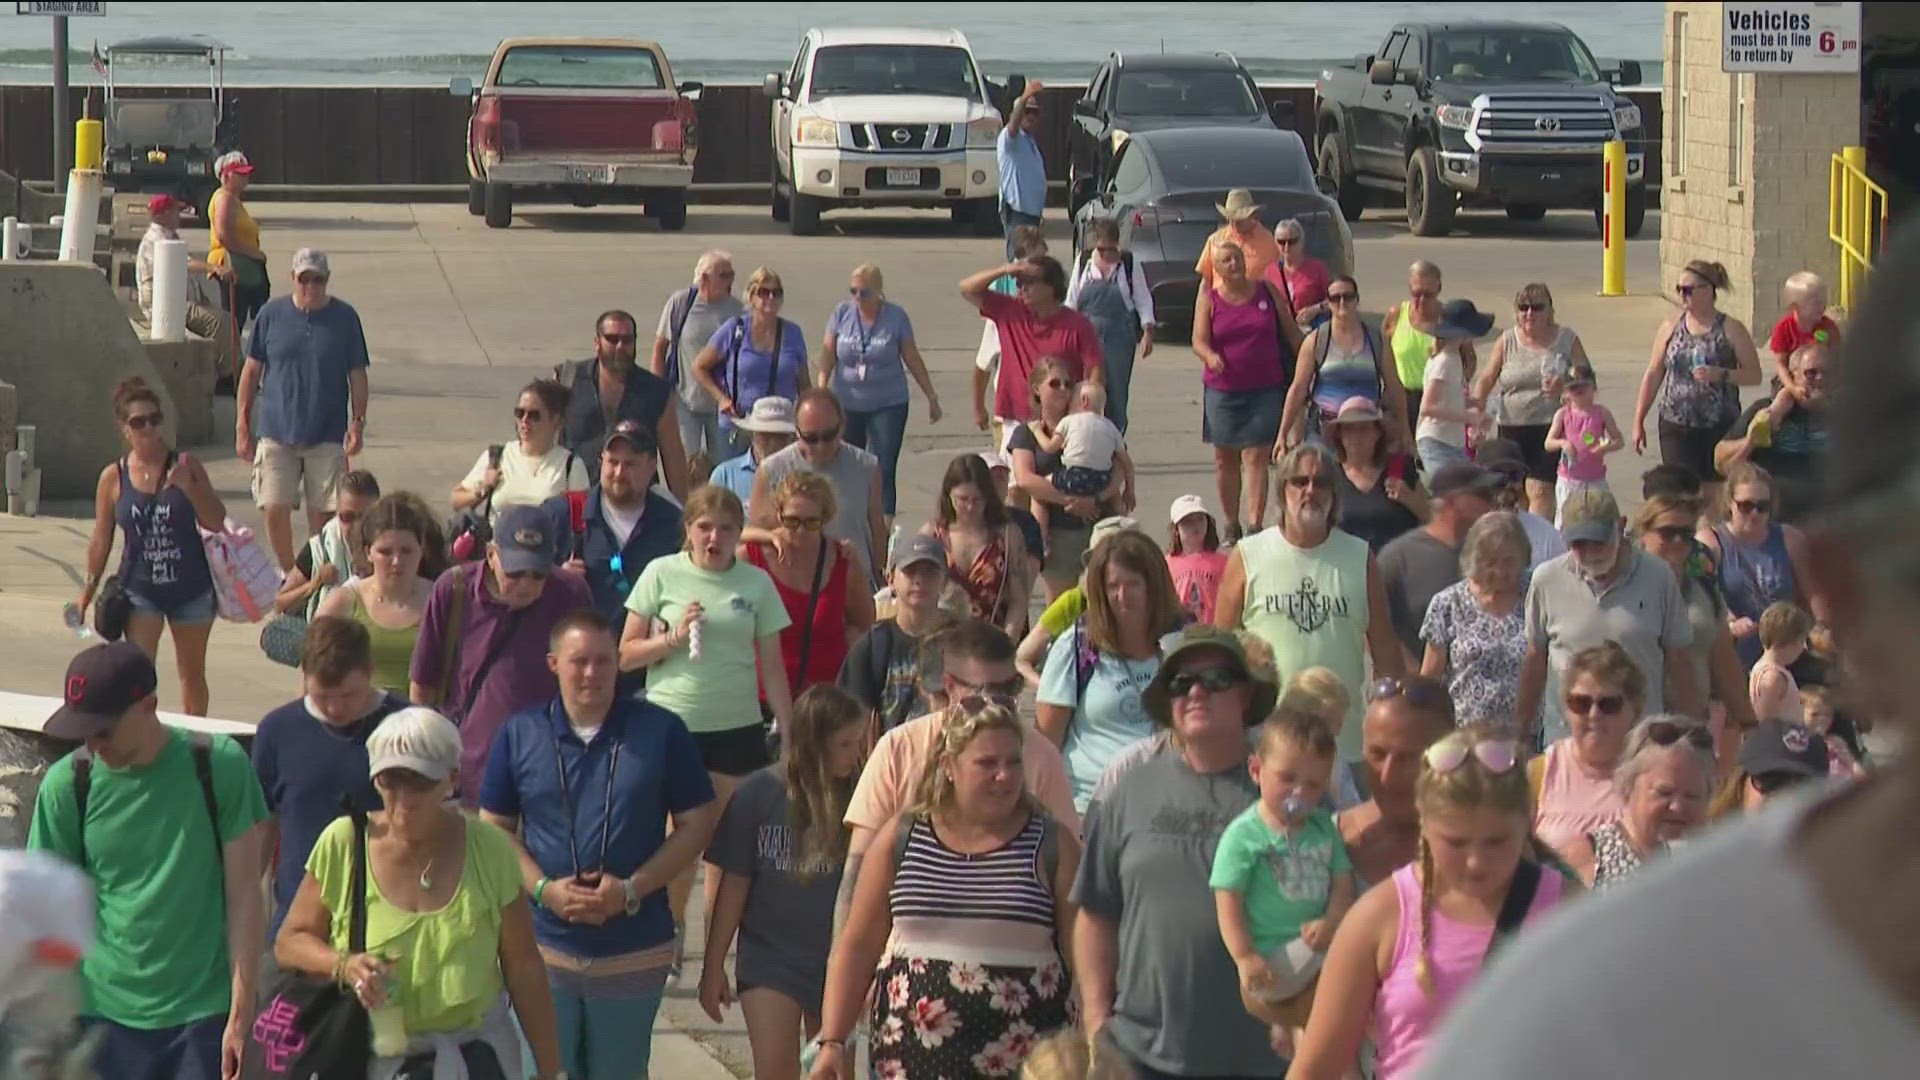 PutinBay visitors react to crowds; SWAT teams at island